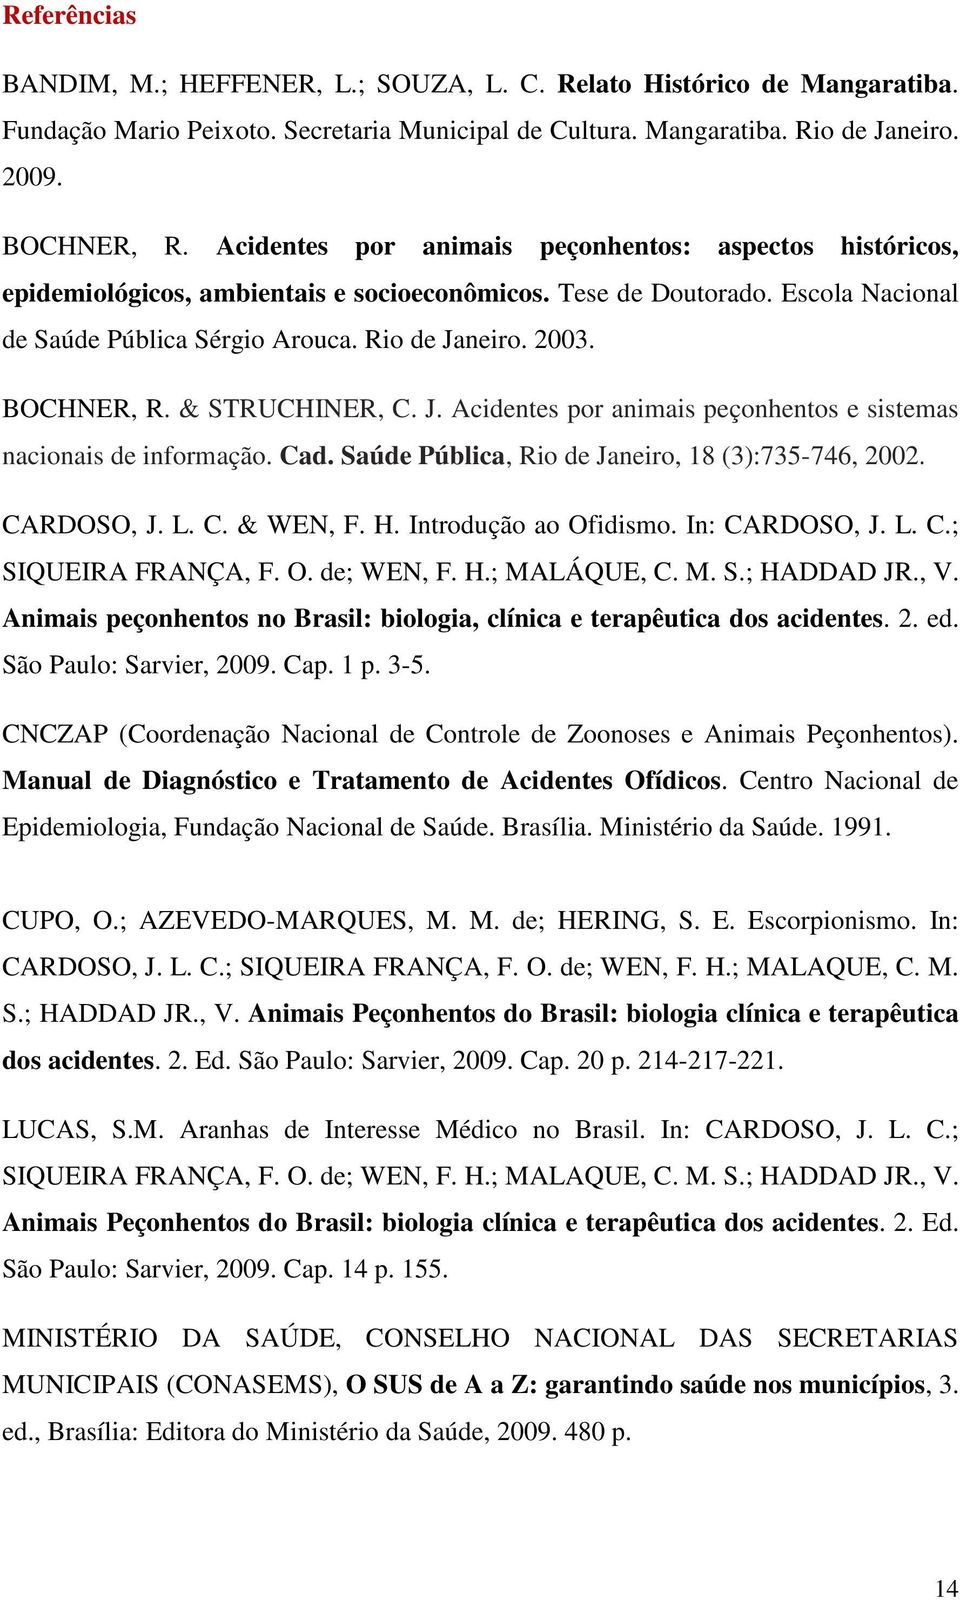 BOCHNER, R. & STRUCHINER, C. J. Acidentes por animais peçonhentos e sistemas nacionais de informação. Cad. Saúde Pública, Rio de Janeiro, 18 (3):735-746, 2002. CARDOSO, J. L. C. & WEN, F. H.